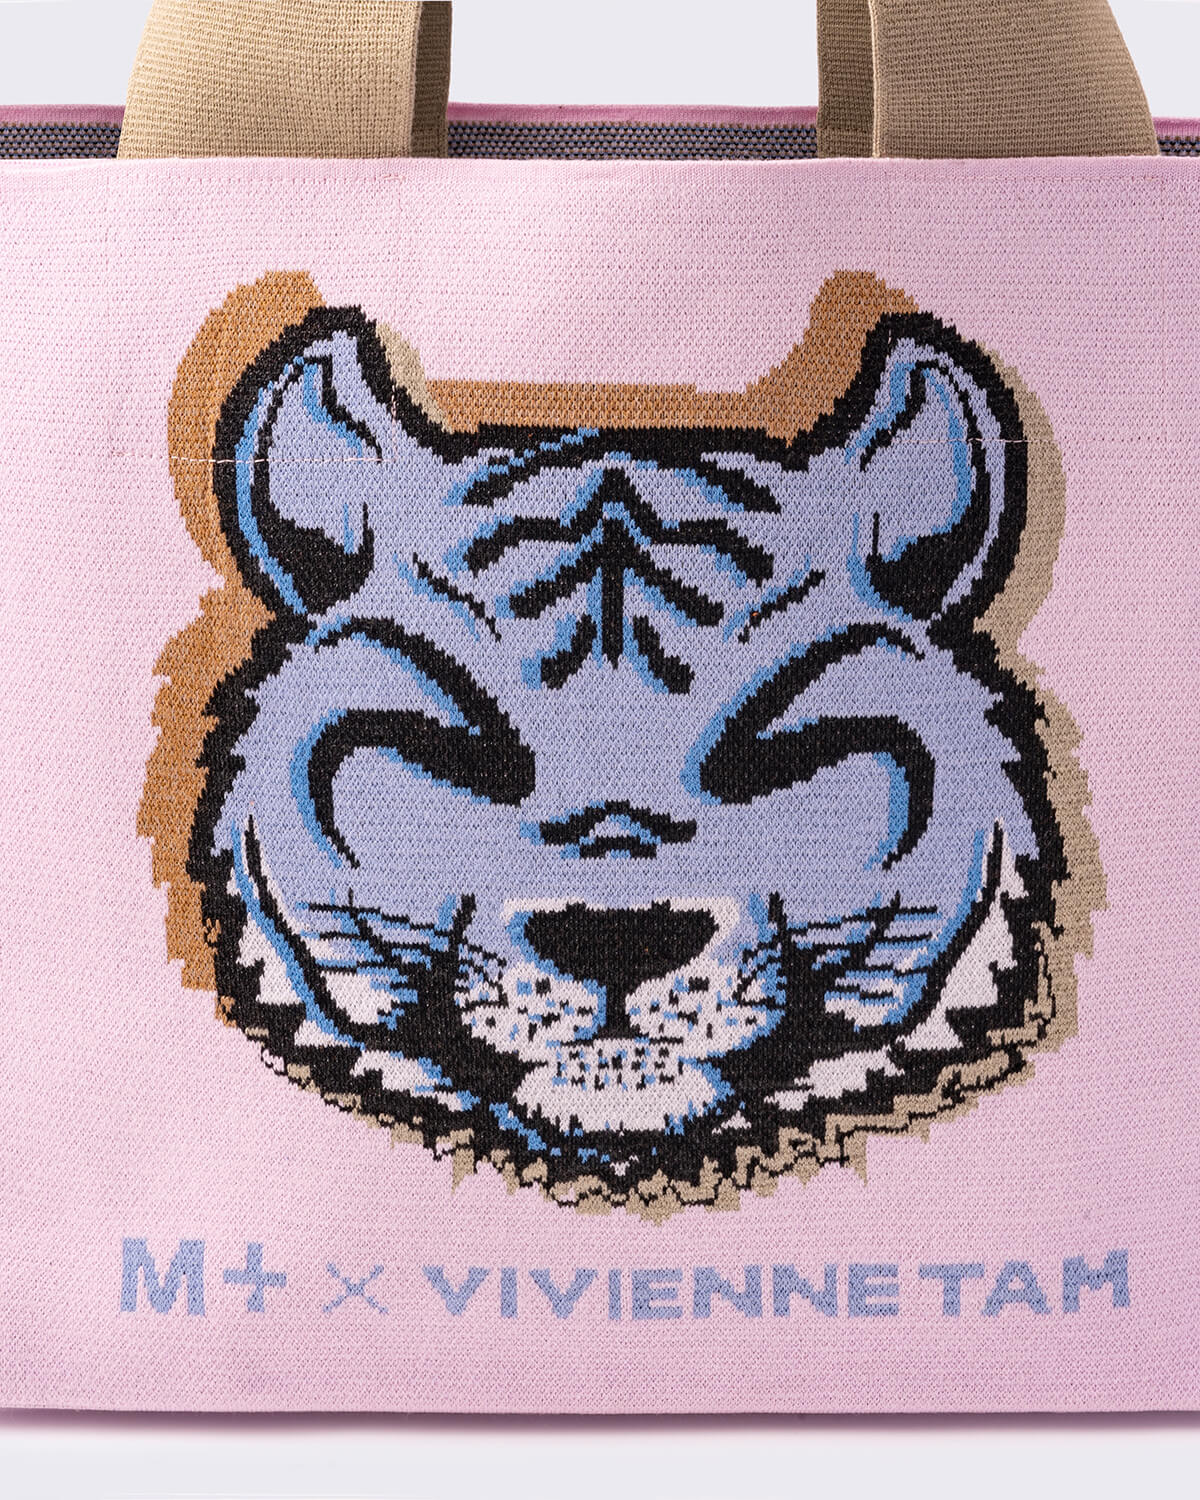 Vivienne Tam 'Pop Pop Tiger' Knitted Tote Bag